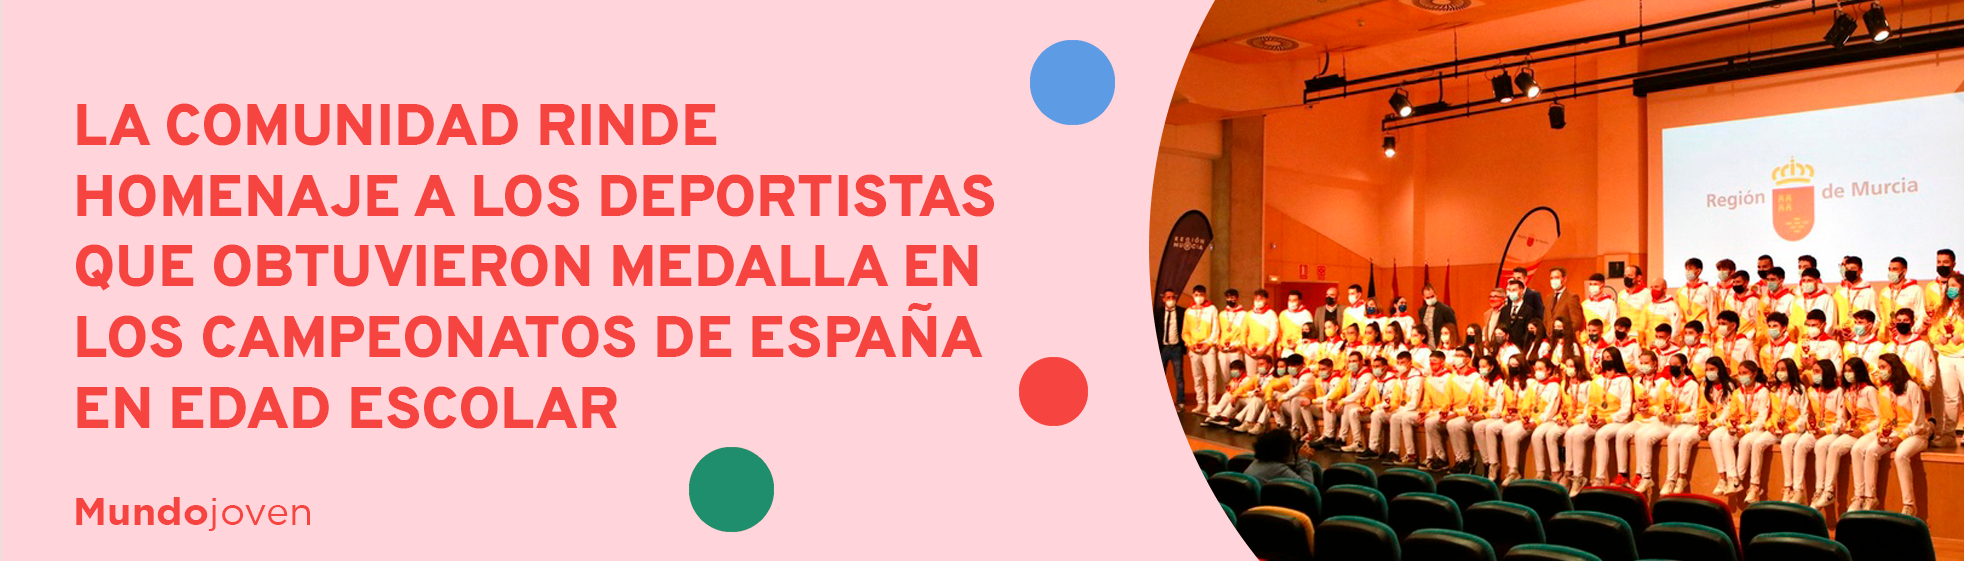 La Comunidad rinde homenaje a los deportistas que obtuvieron medalla en los Campeonatos de España en Edad Escolar